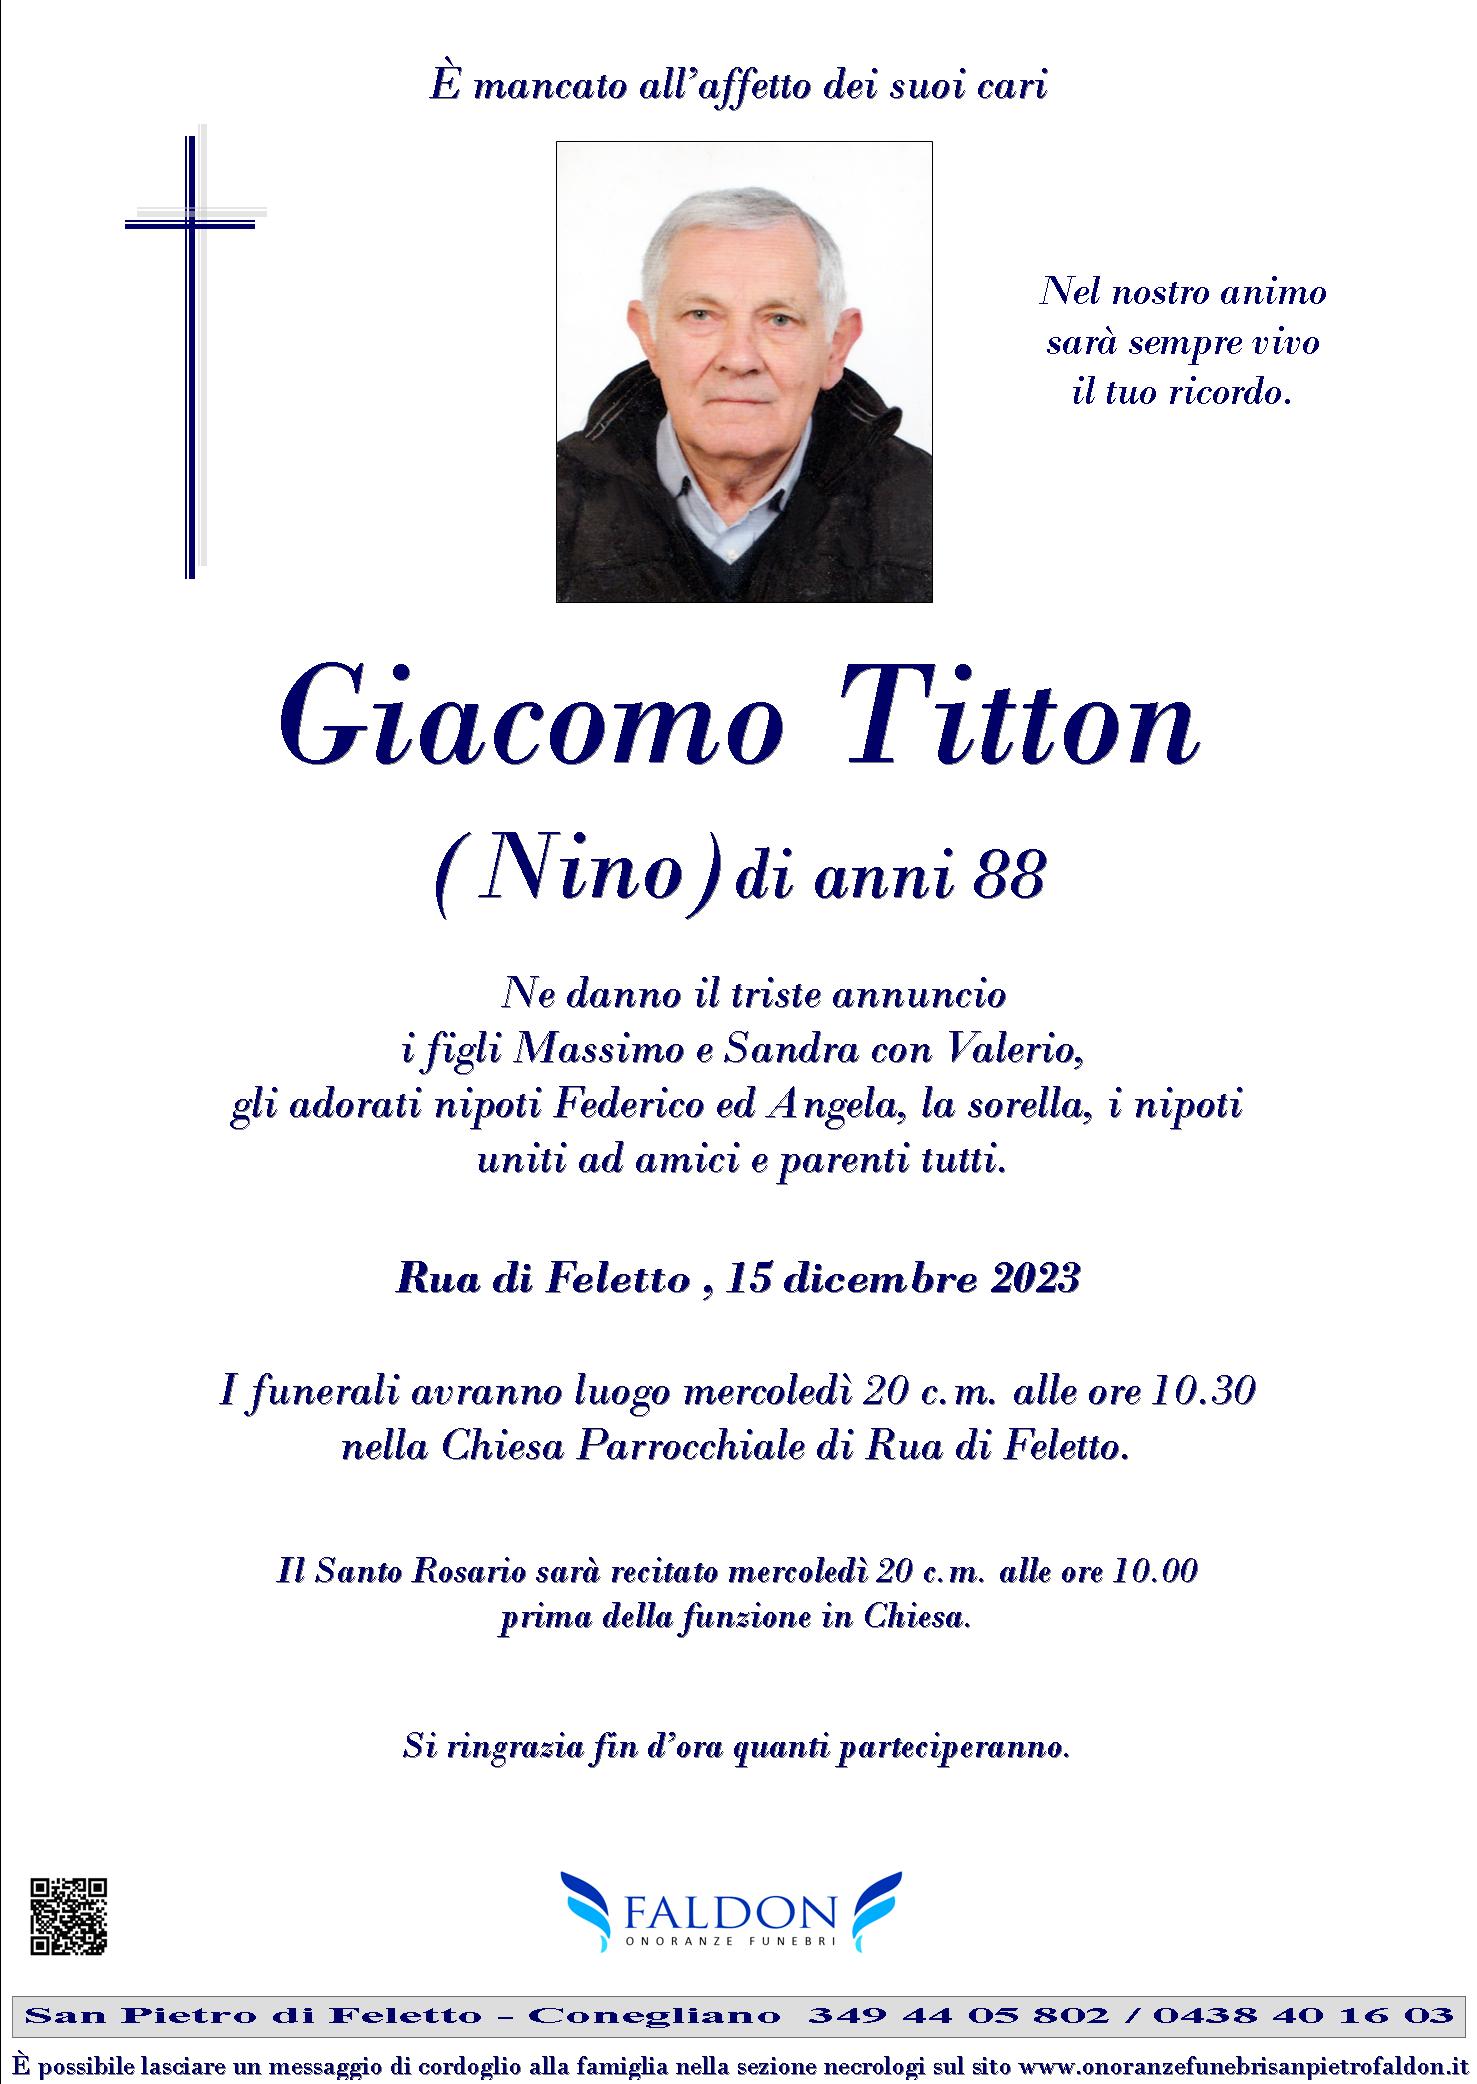 Giacomo Titton